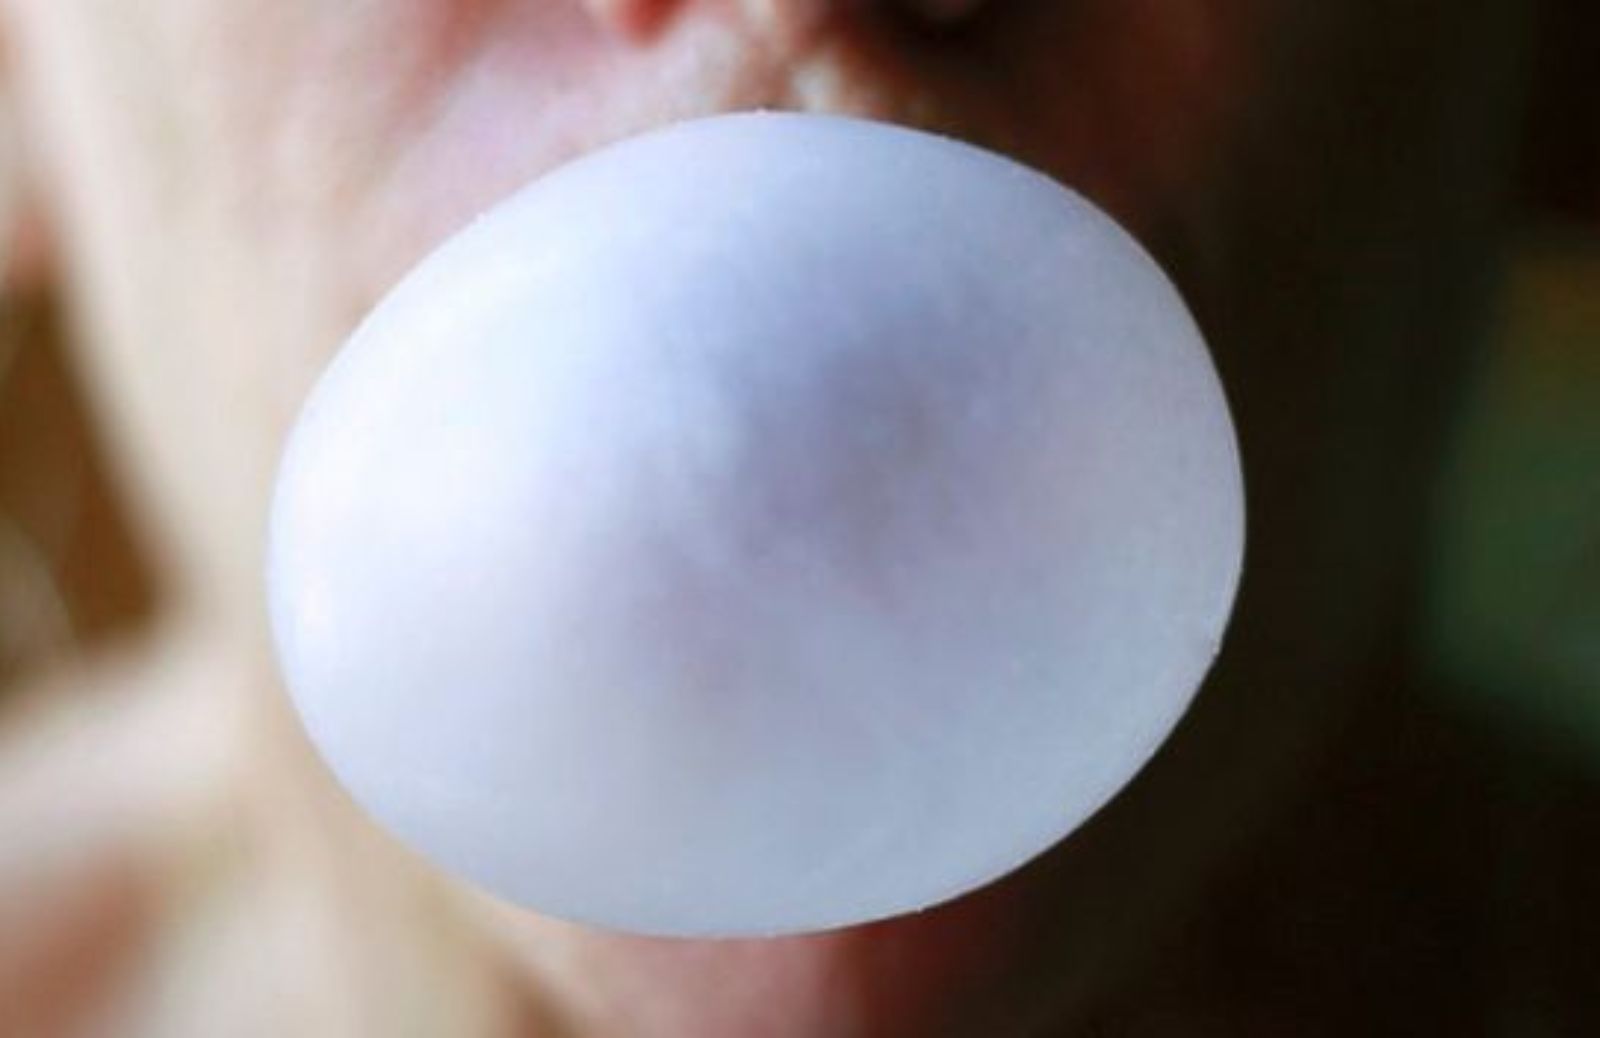 Come togliere il chewing-gum dai vestiti